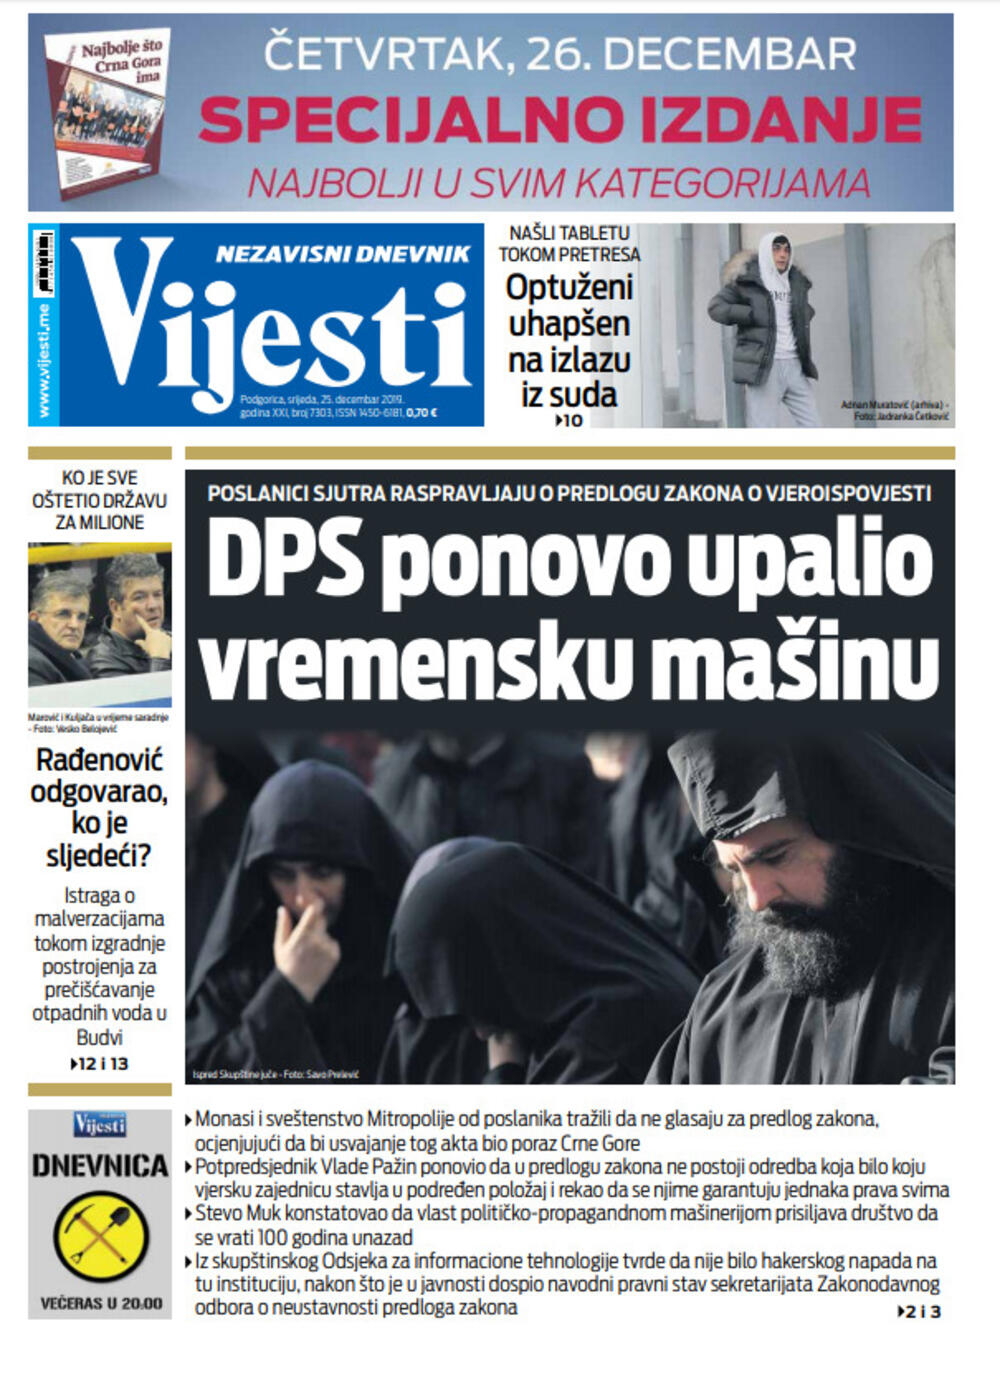 Naslovna strana "Vijesti" za 25.12., Foto: Vijesti